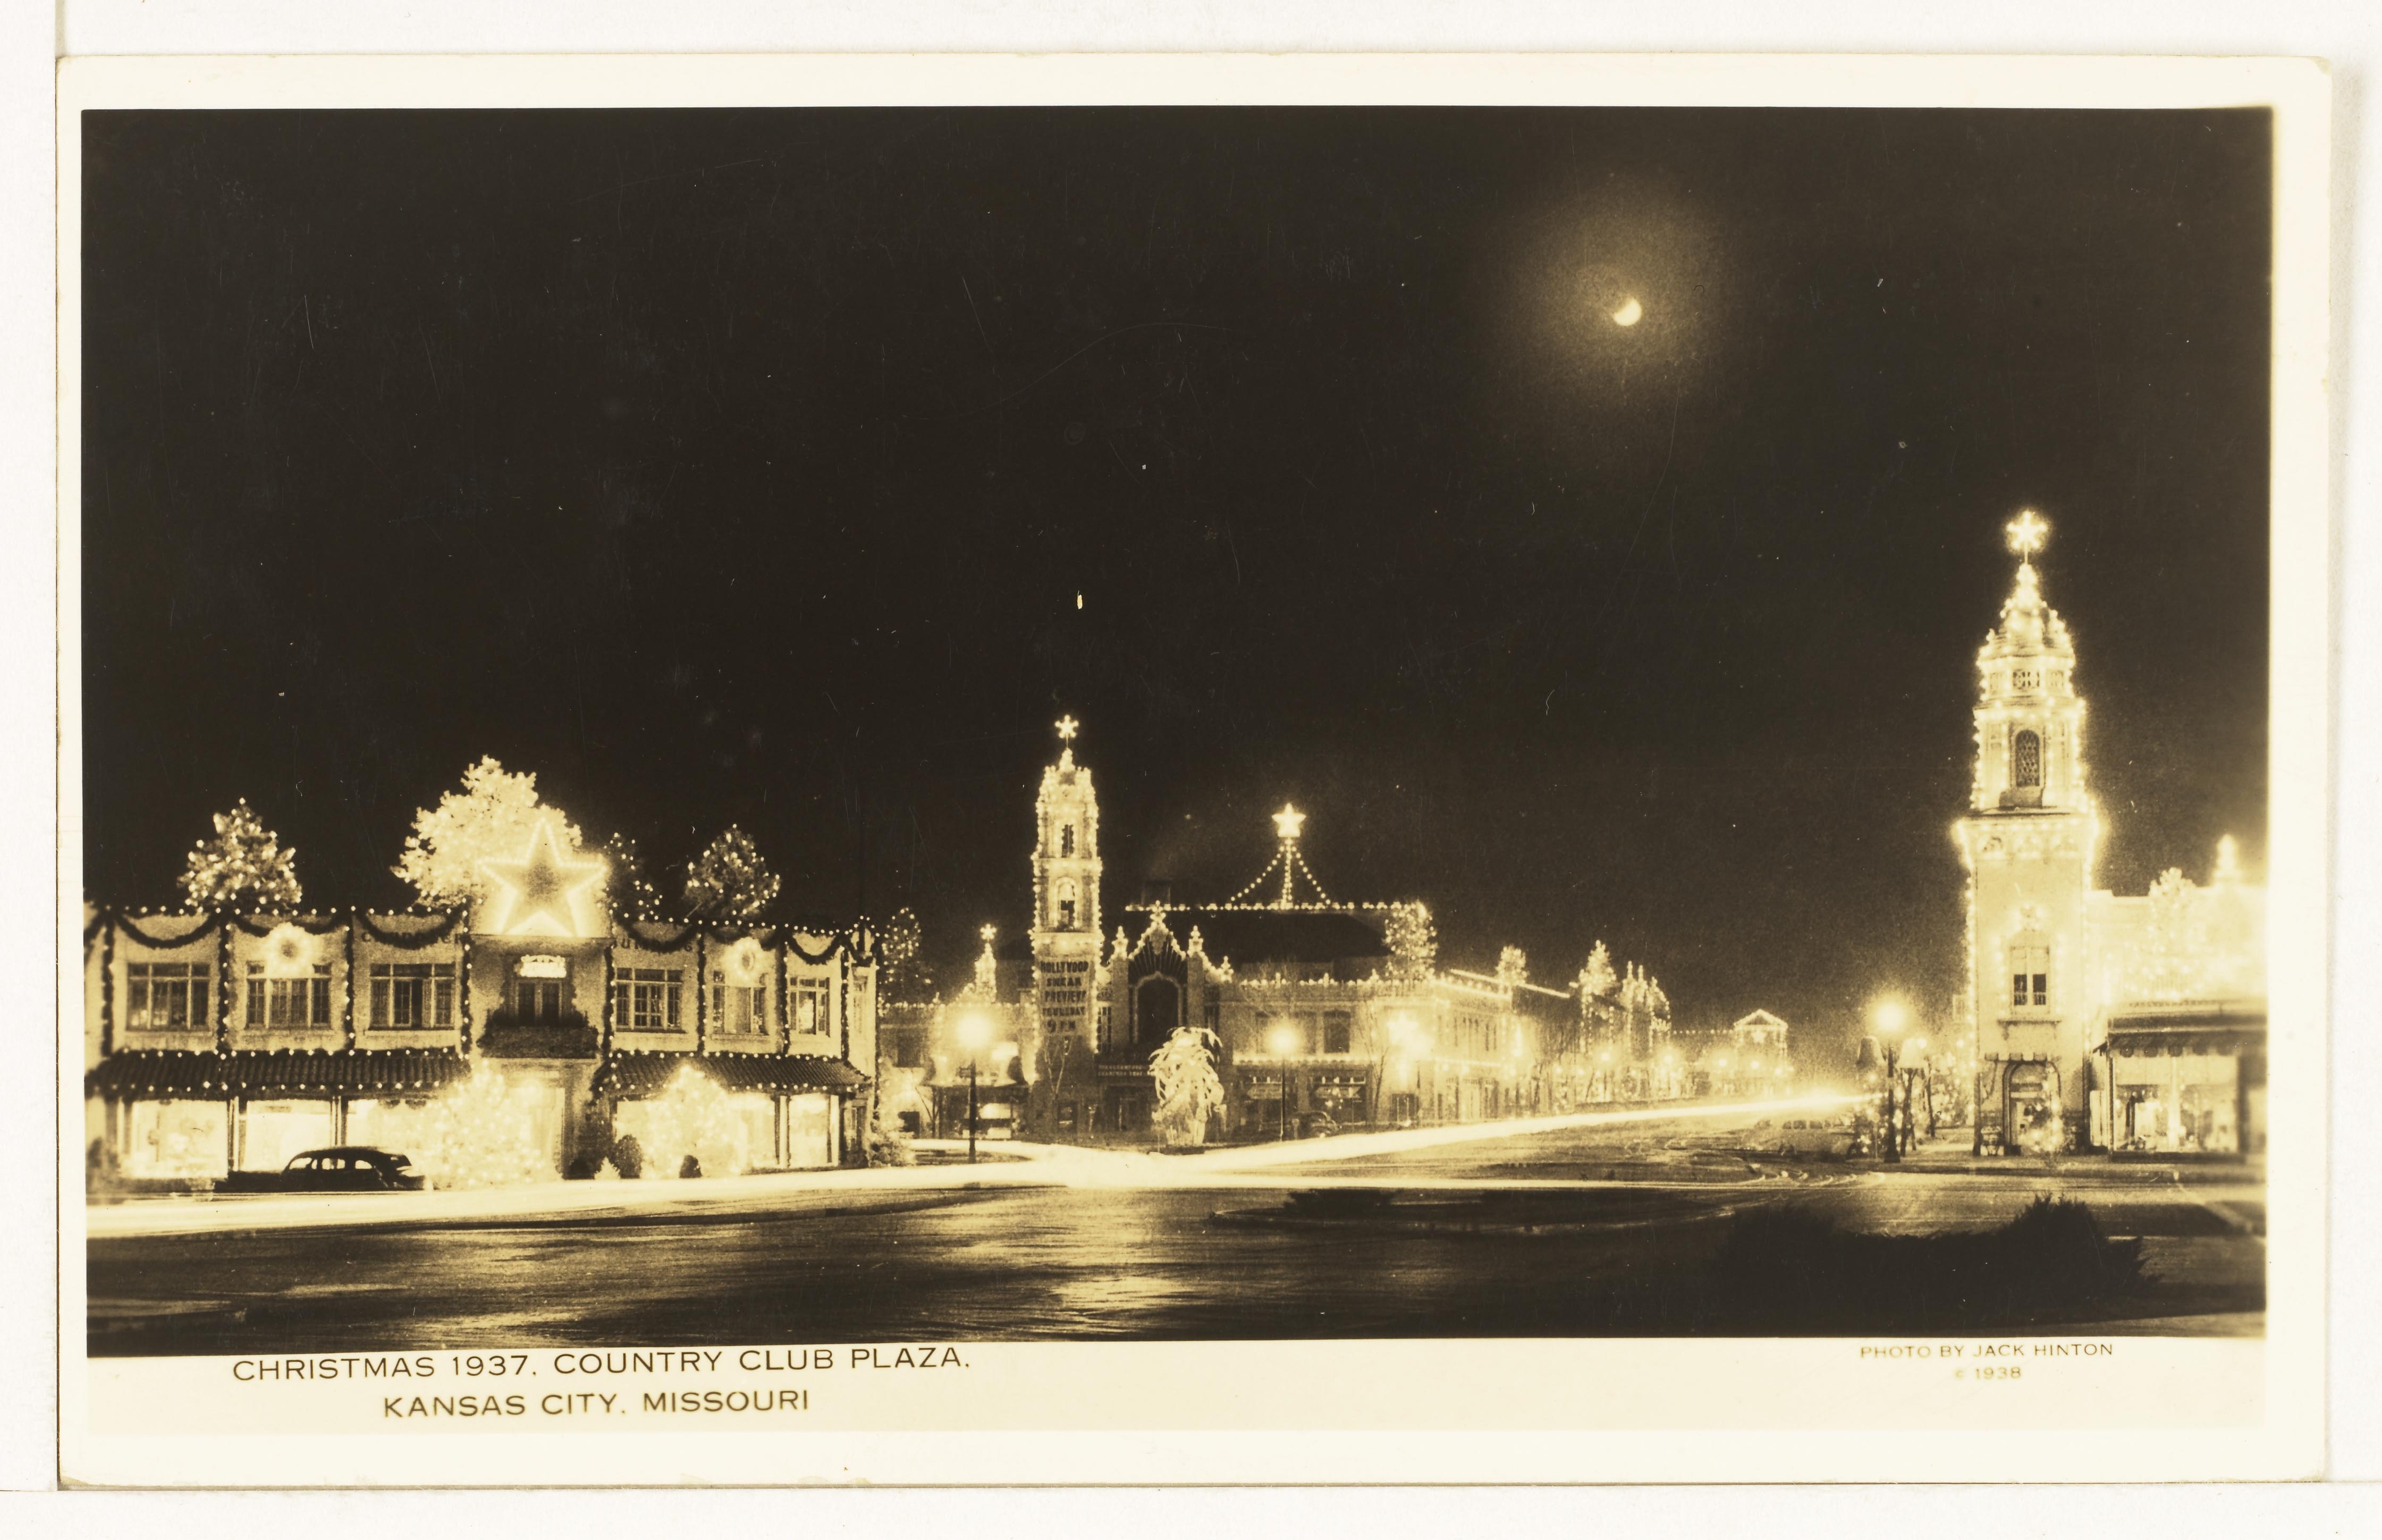 Postcard showing the Plaza Christmas lights display – 1937